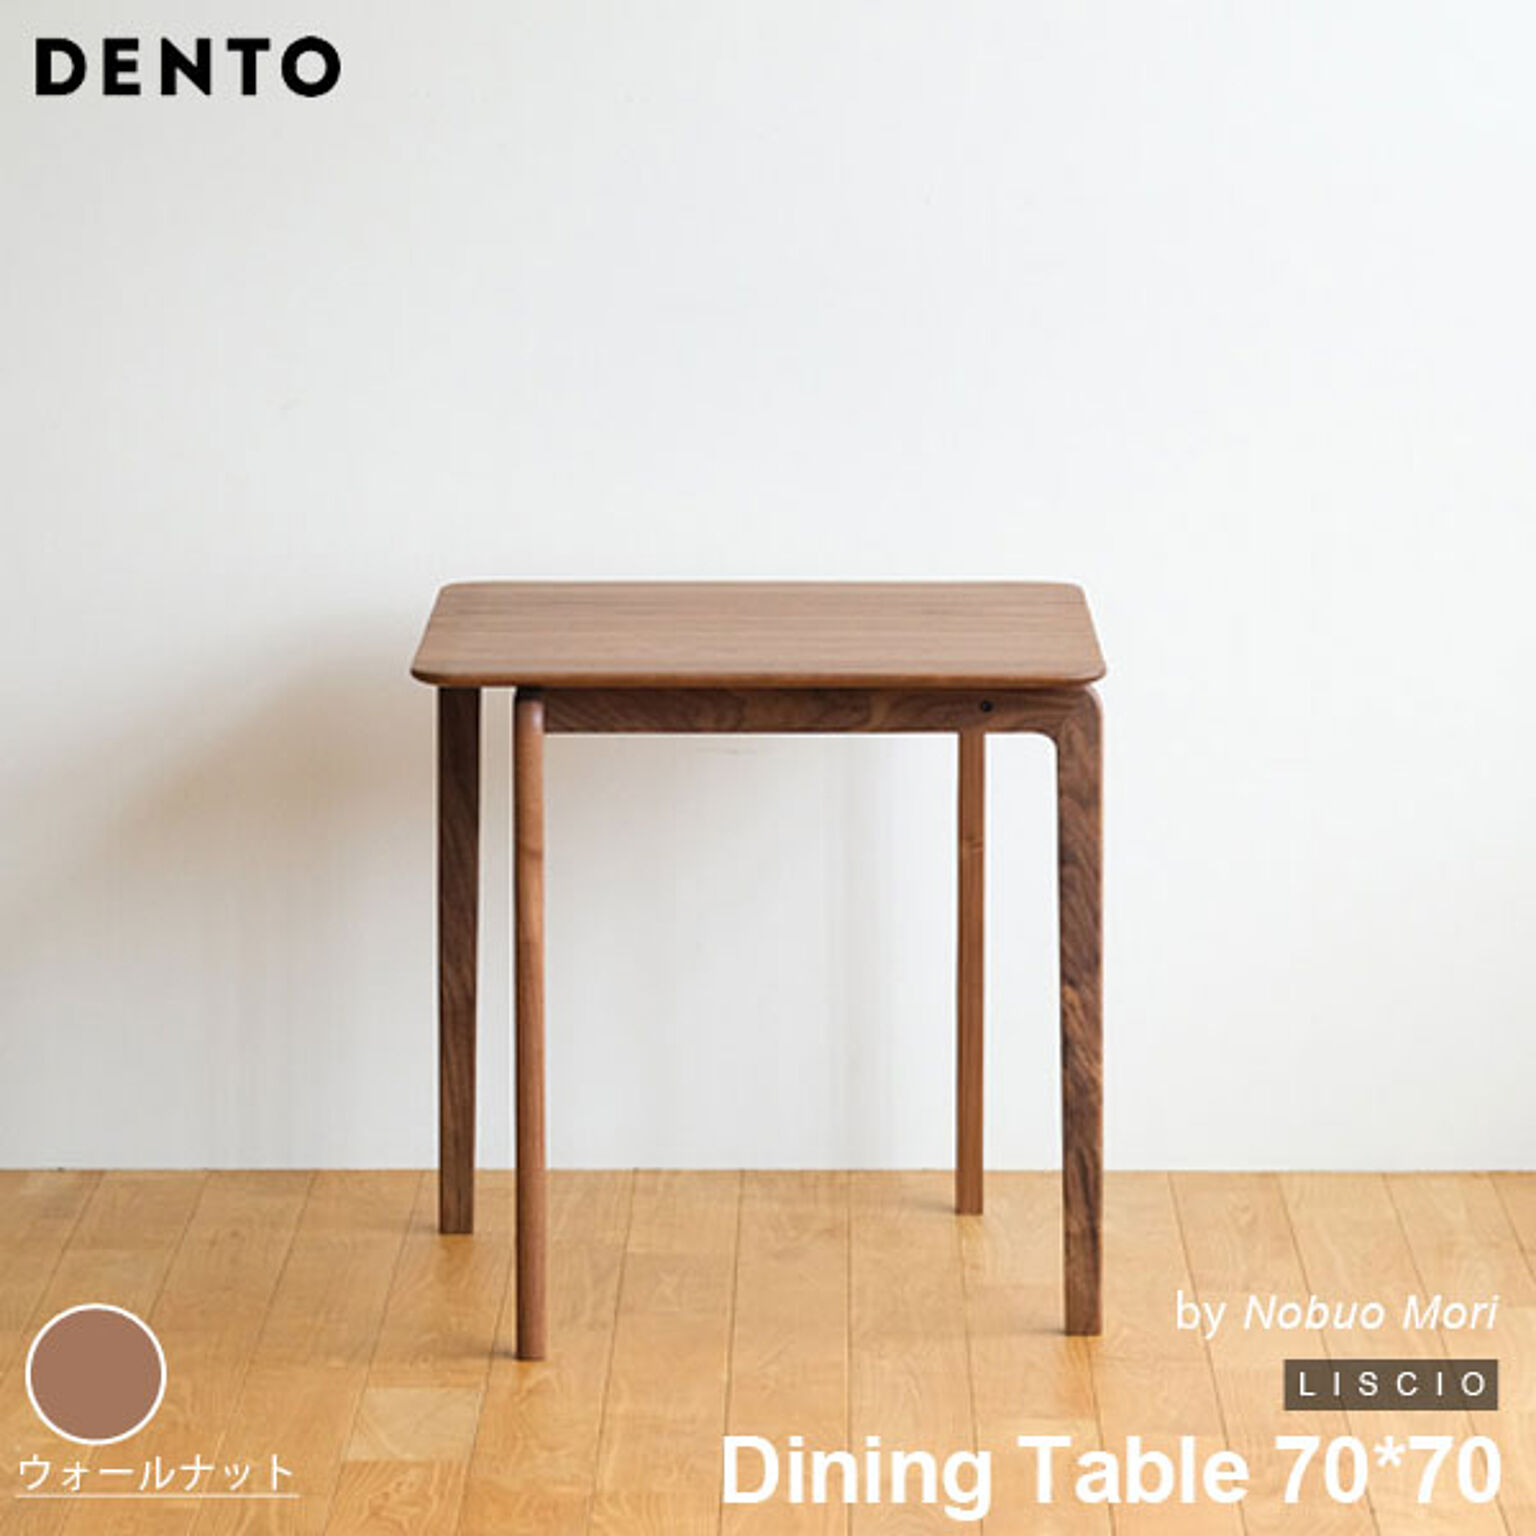 ダイニングテーブル 木製 四角 正方形 2人用 LISCIO Dining Table 70*70 リッショ 木製 無垢 スタイリッシュ 北欧 ダイニング 日本製 